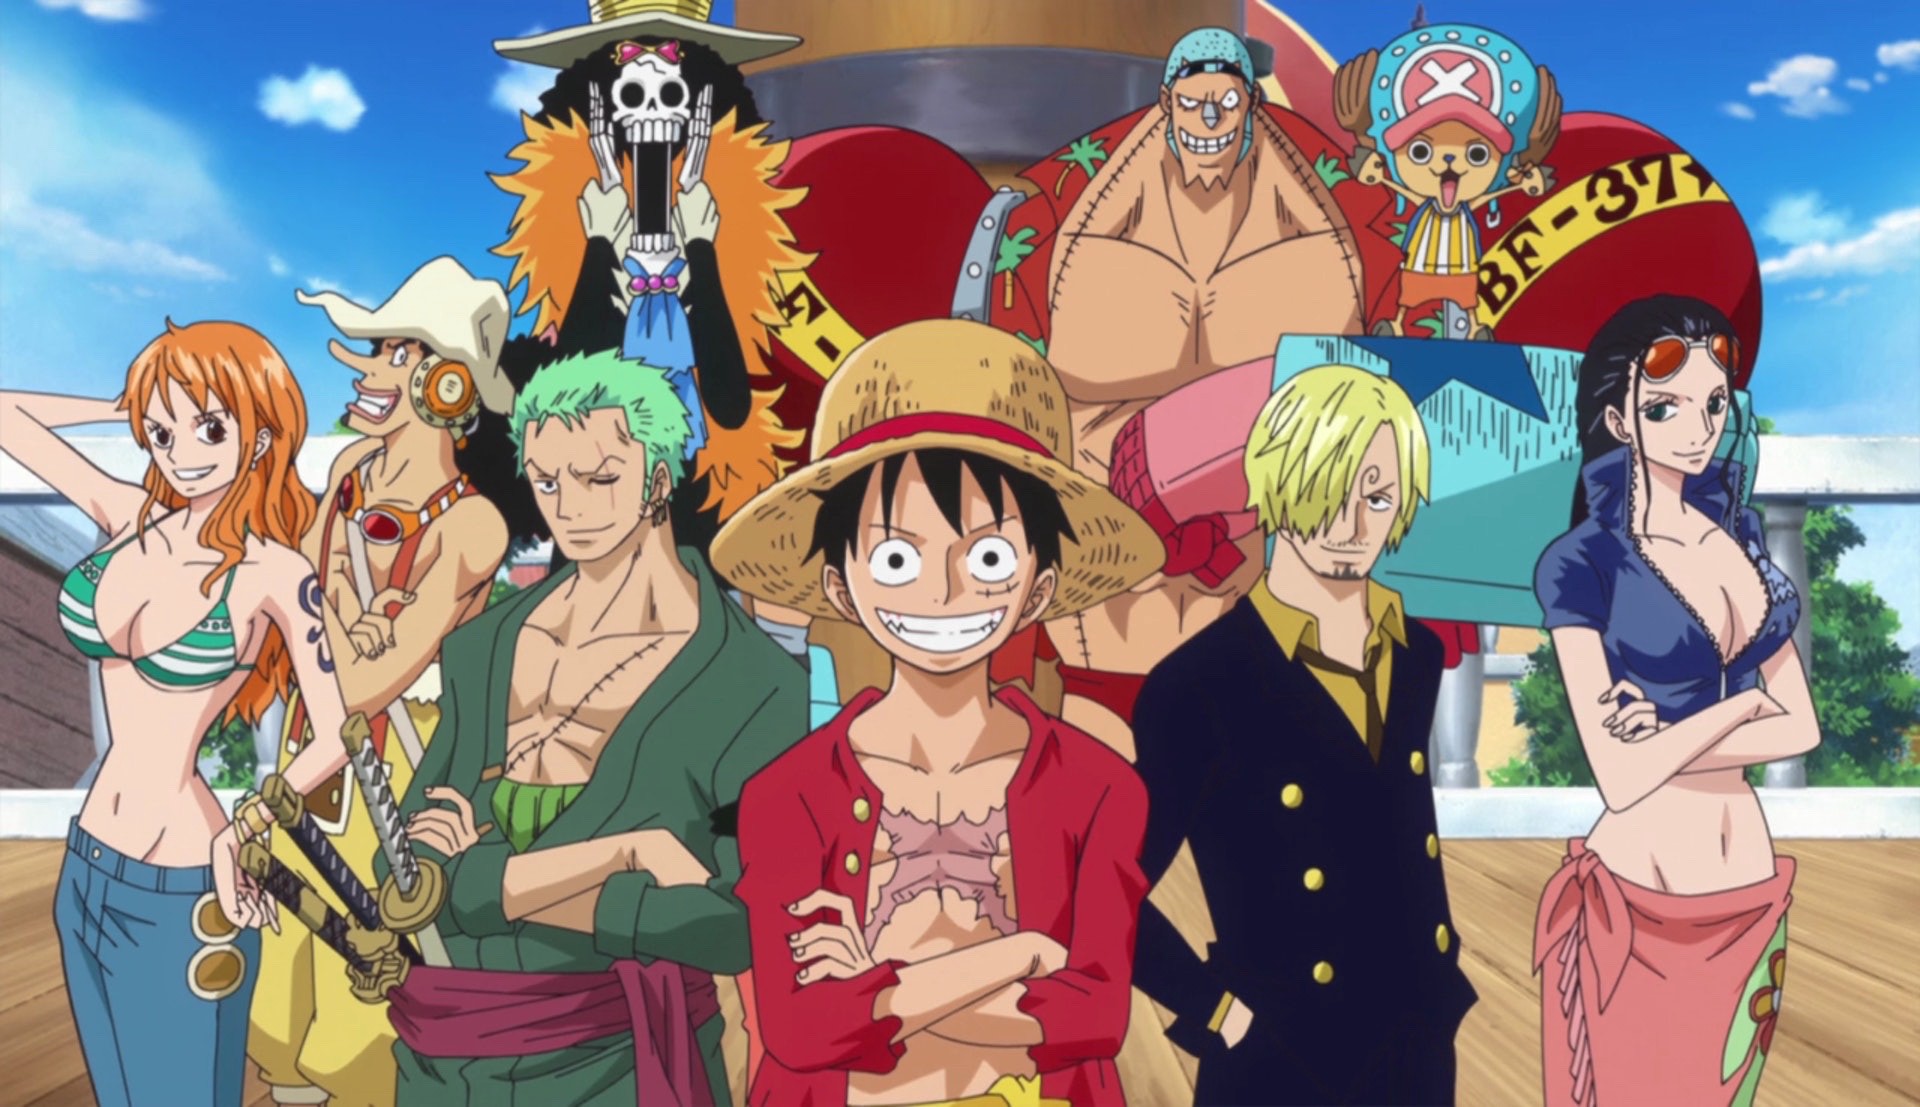 Top des meilleures références culturelles dans One Piece